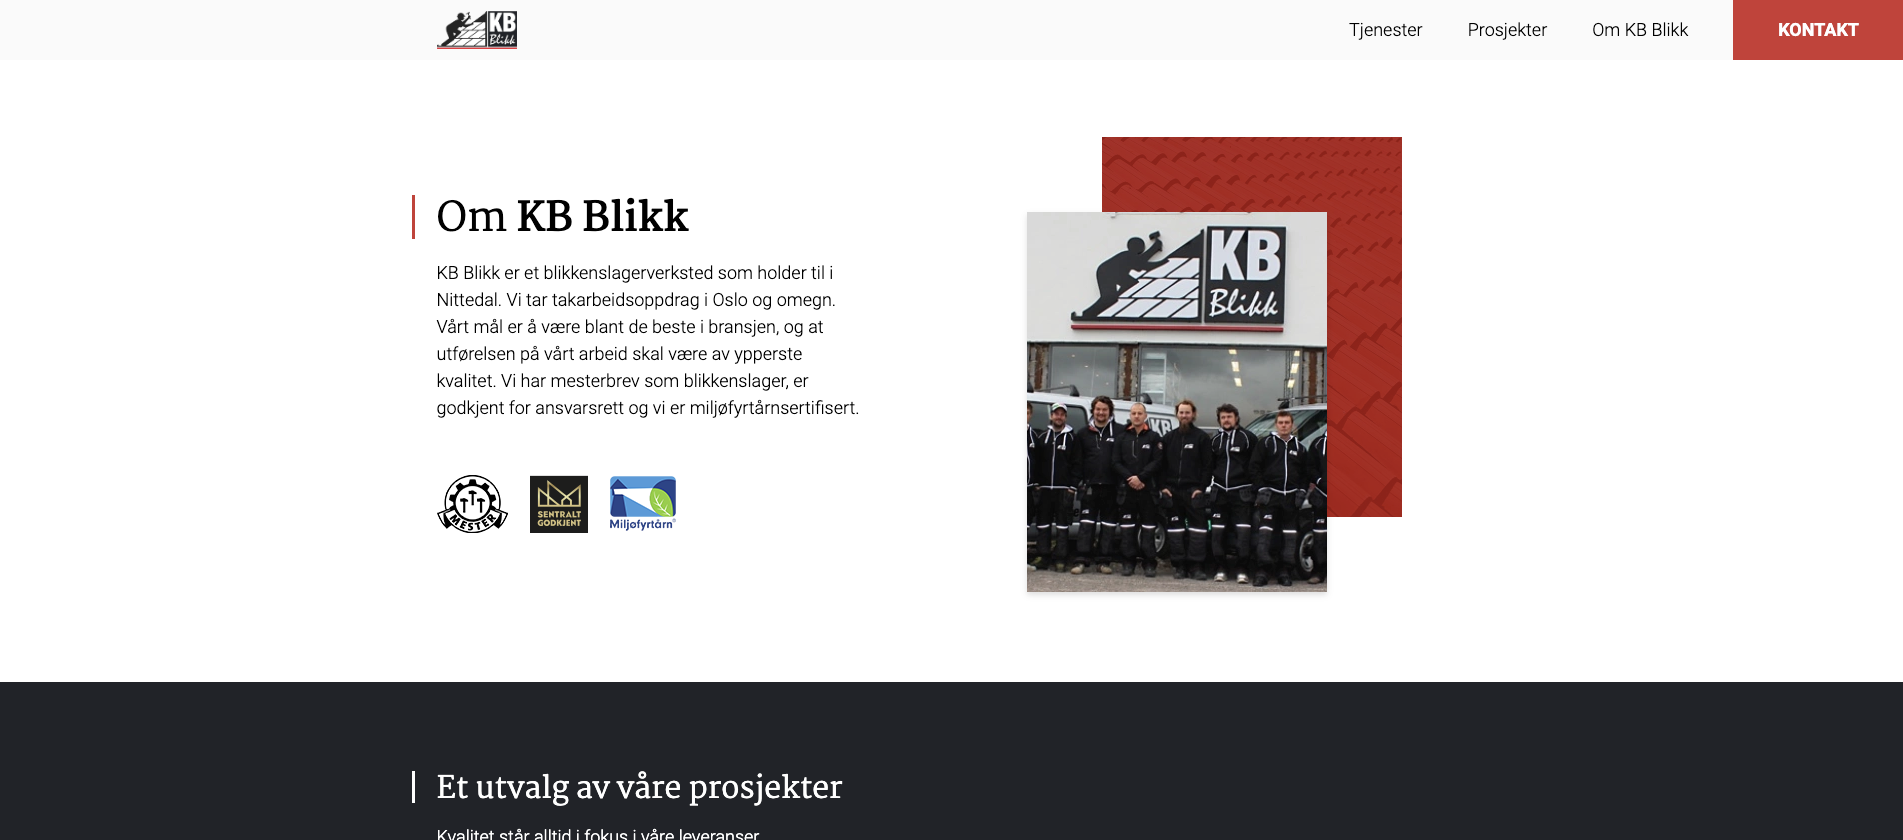 Forside designet til KB Blikk, andre seksjon på nettsiden som omhandler om KB Blikk.